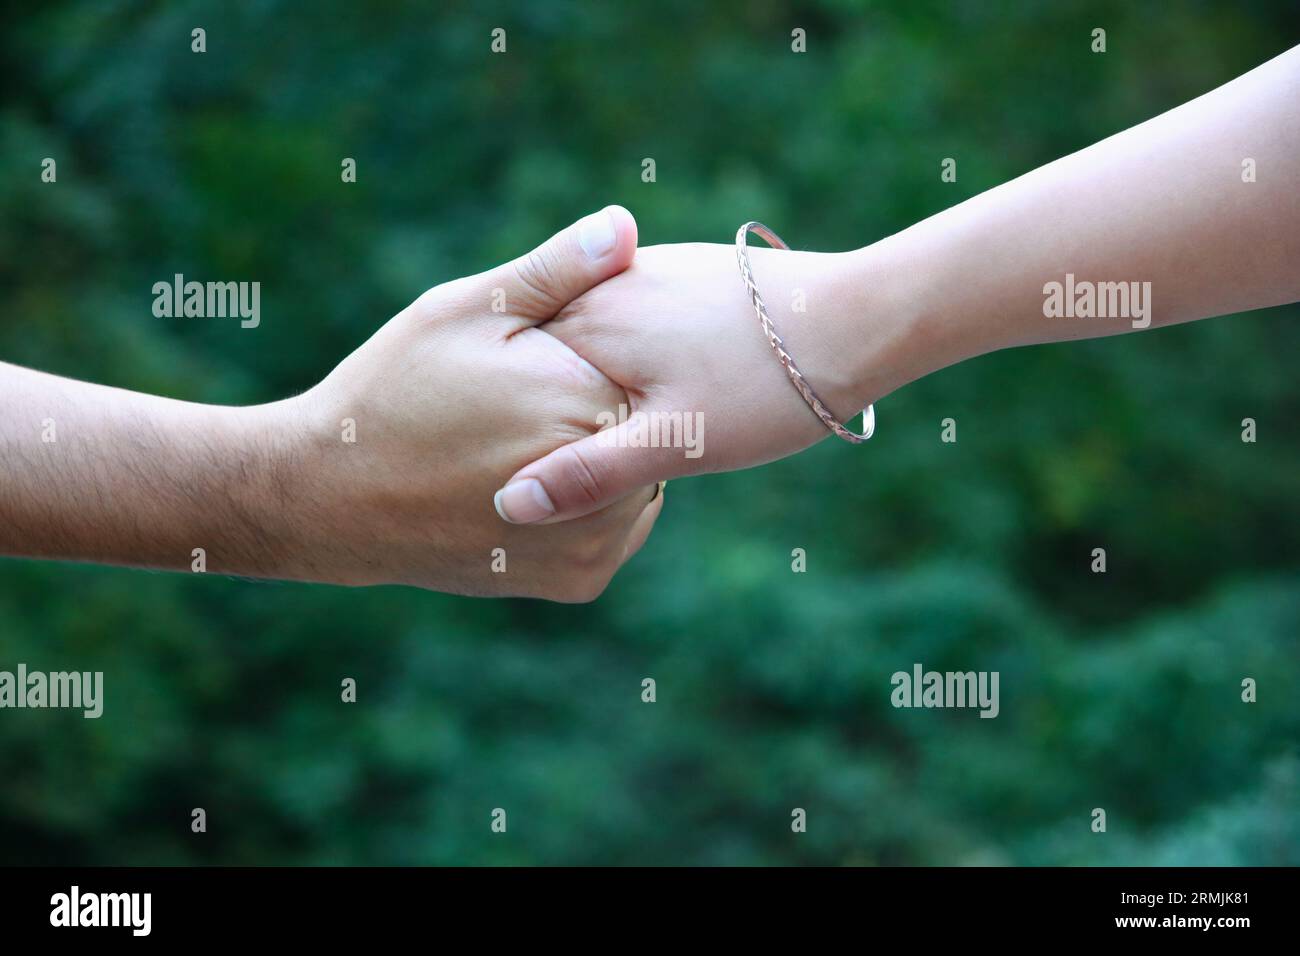 Nahaufnahme der Hände eines Mannes und einer Frau, die sich gegenseitig halten. Die Frau trägt ein Armband. Hintergrund ist tiefgrün. Stockfoto